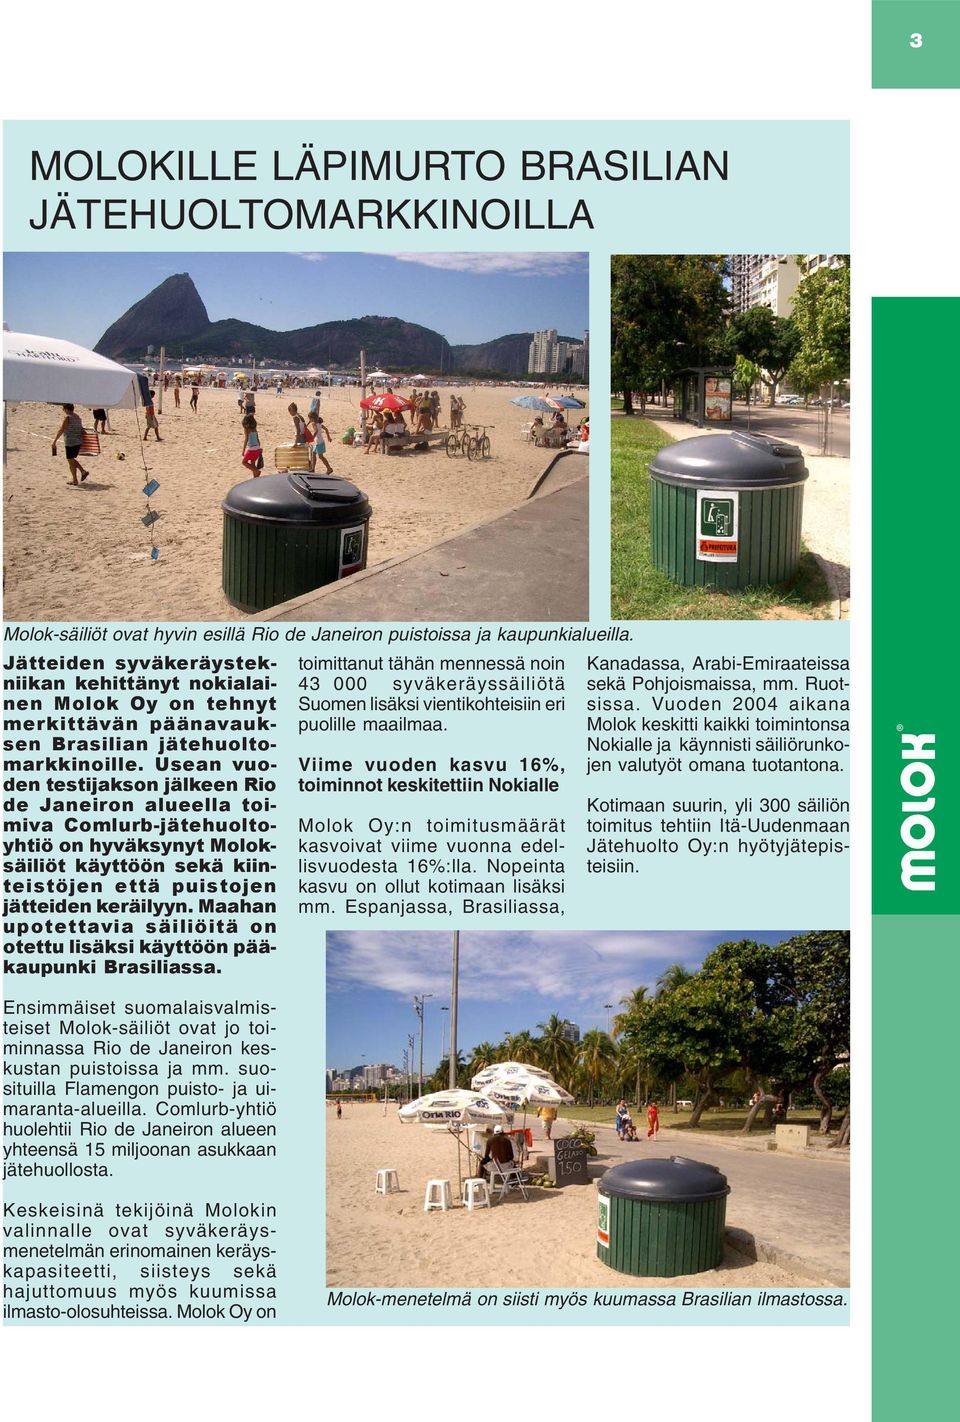 Usean vuoden testijakson jälkeen Rio de Janeiron alueella toimiva Comlurb-jätehuoltoyhtiö on hyväksynyt Moloksäiliöt käyttöön sekä kiinteistöjen että puistojen jätteiden keräilyyn.